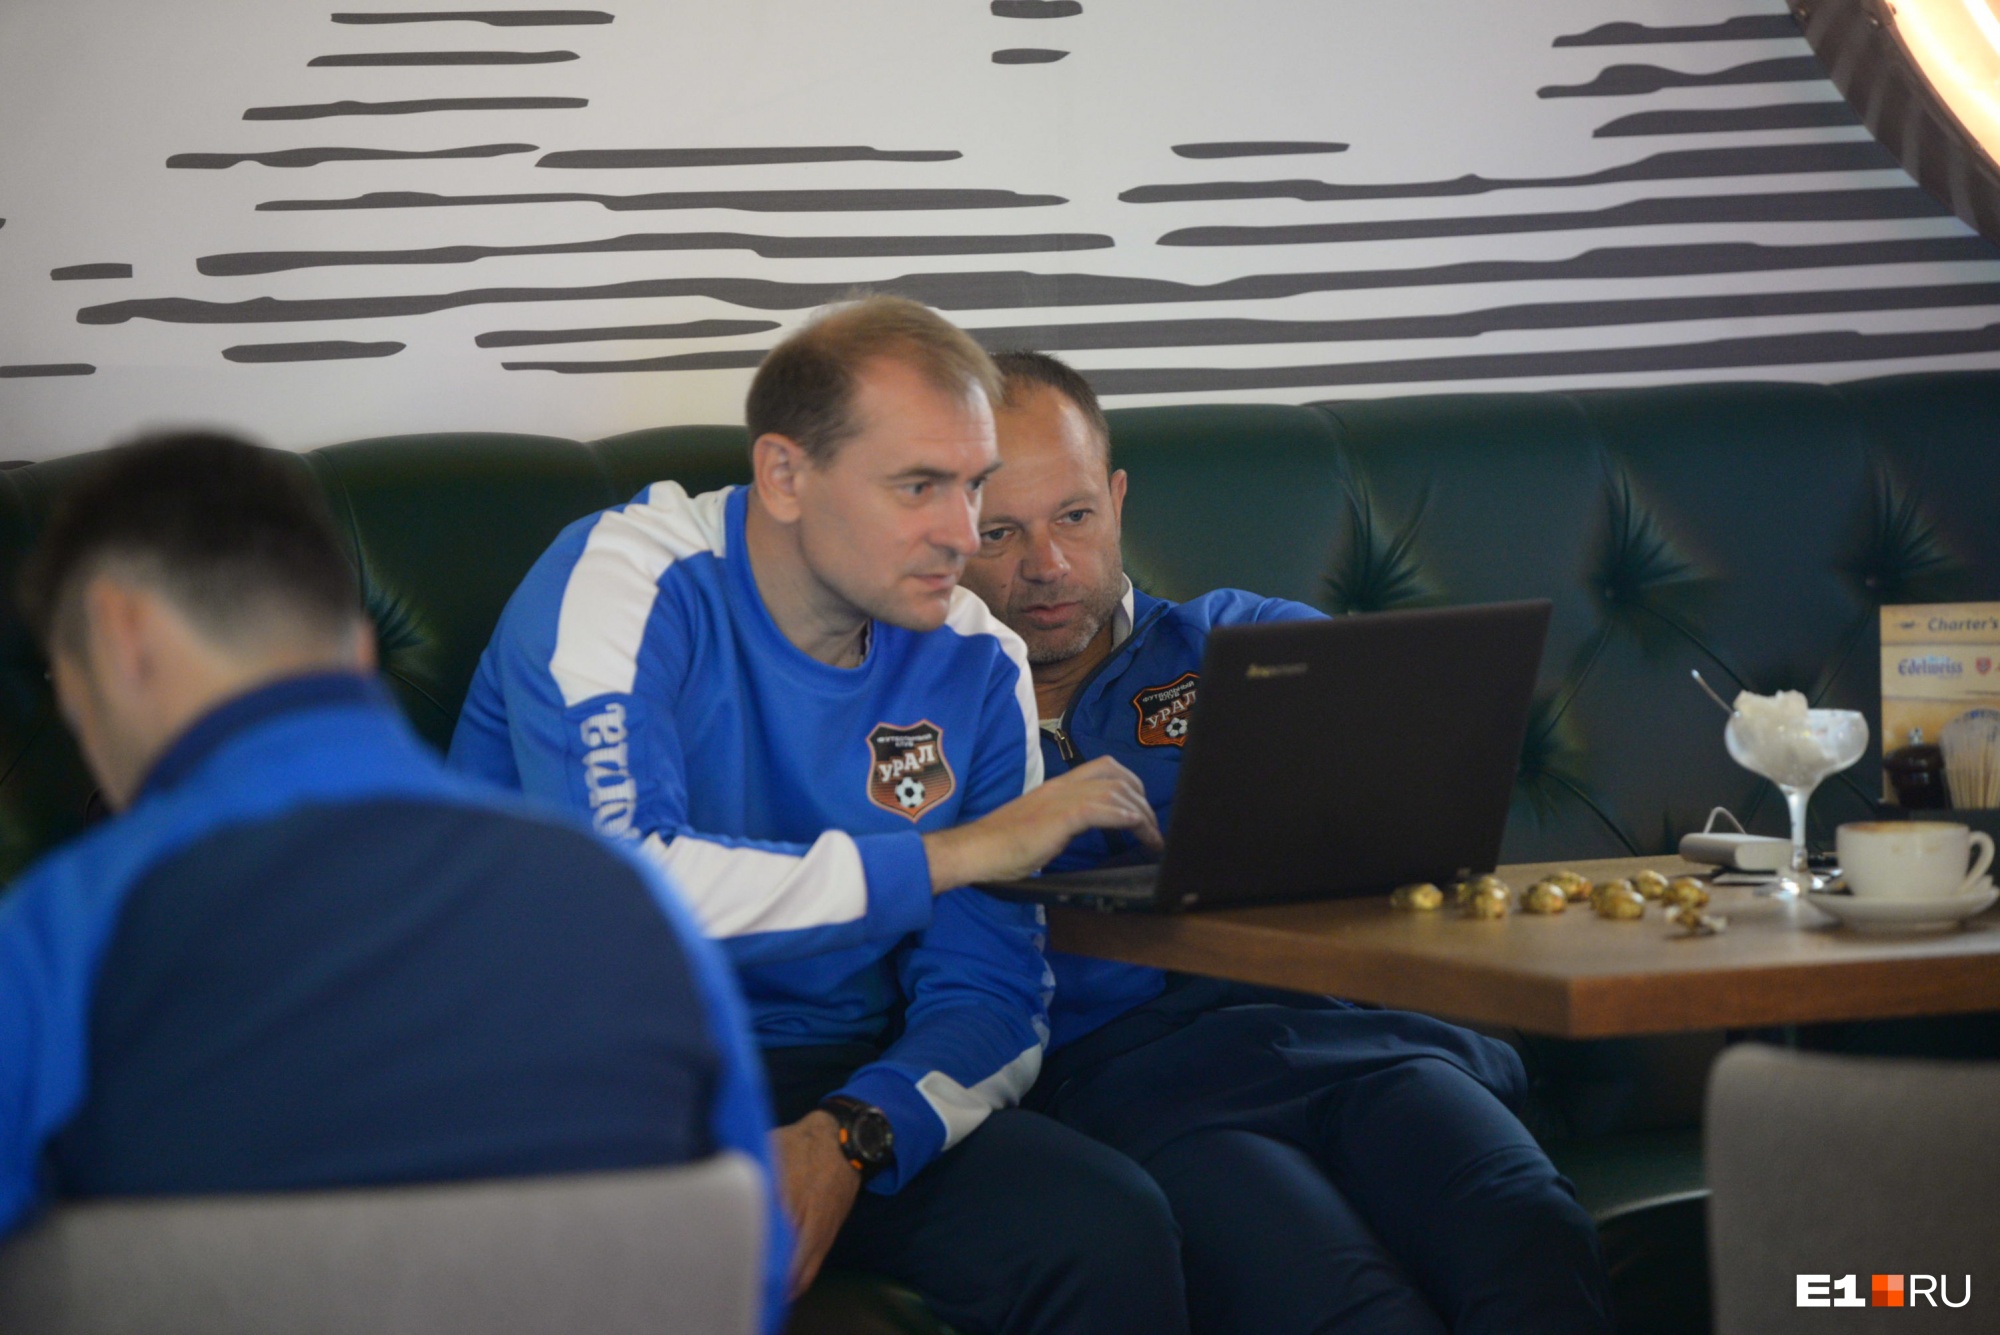 Даже в аэропорту главный тренер Дмитрий Парфёнов с помощником готовился к матчу